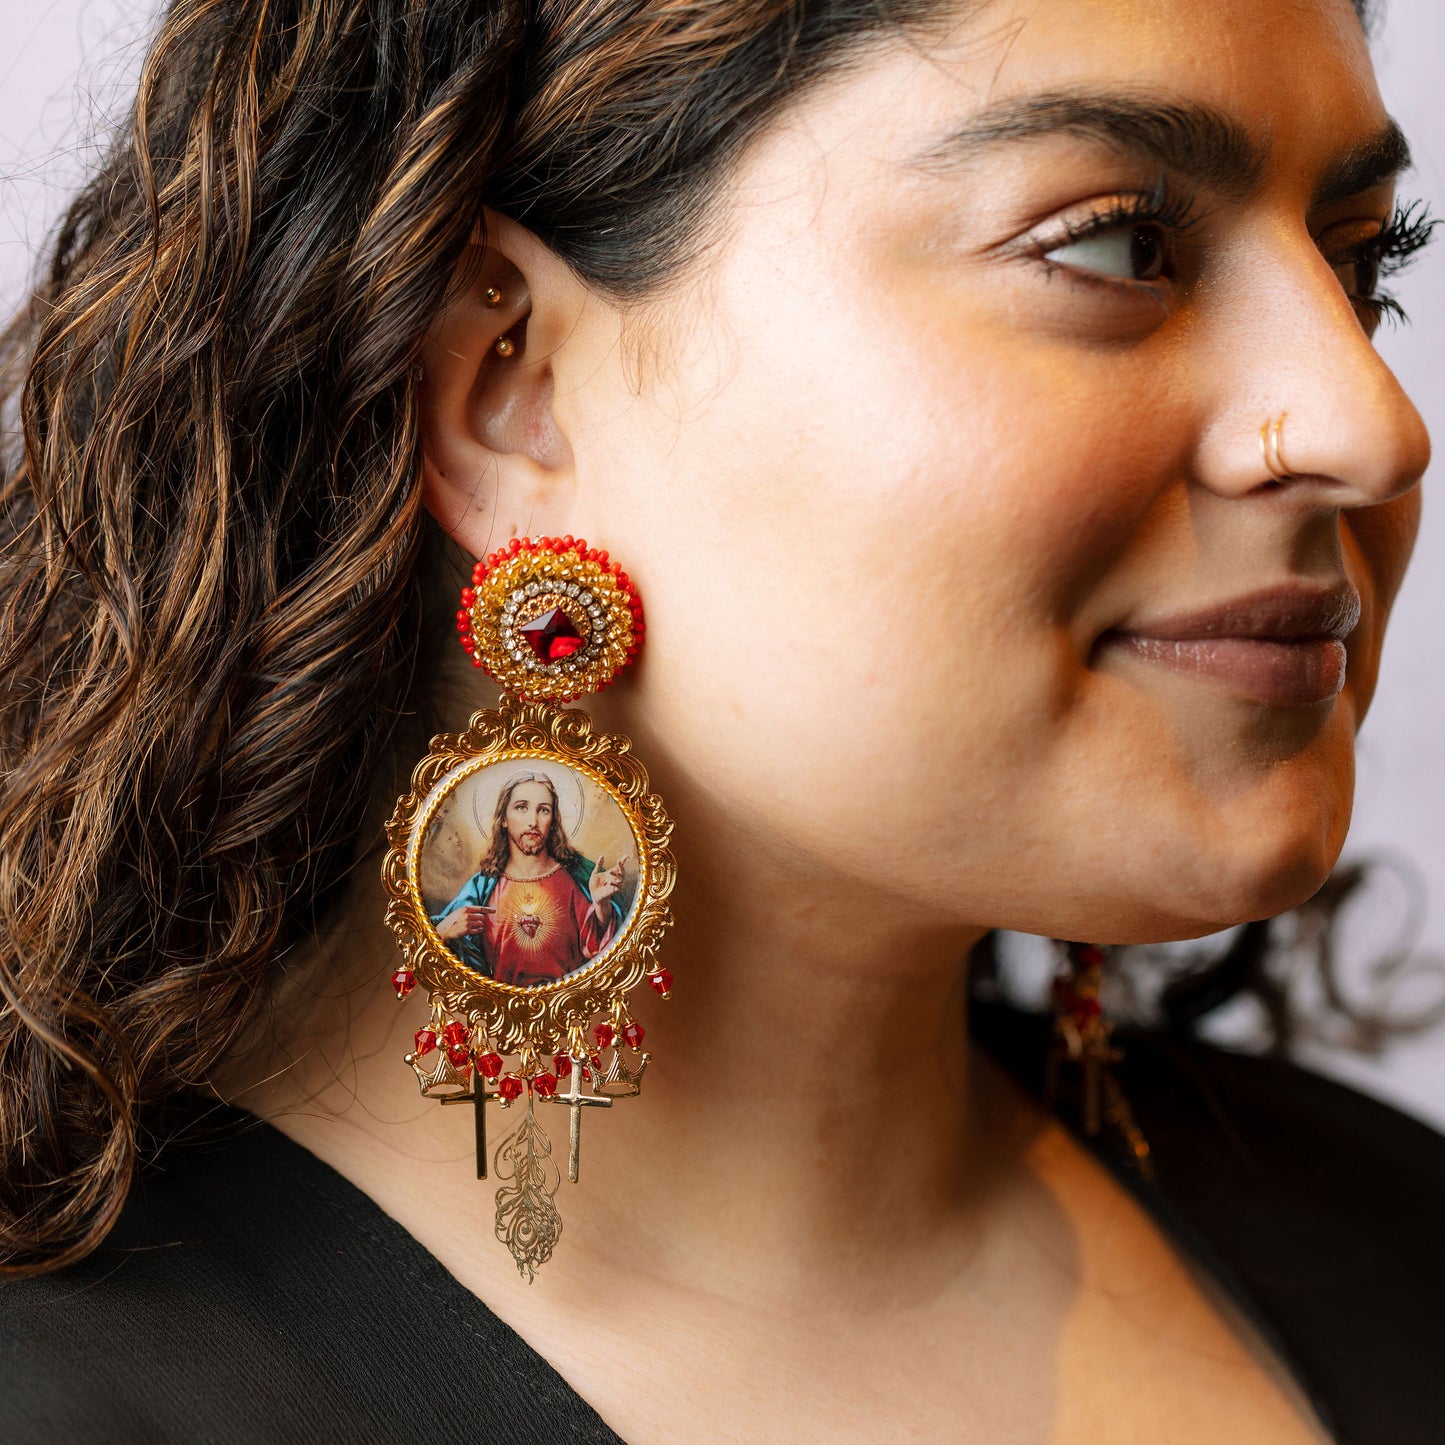 Jesus earrings on model